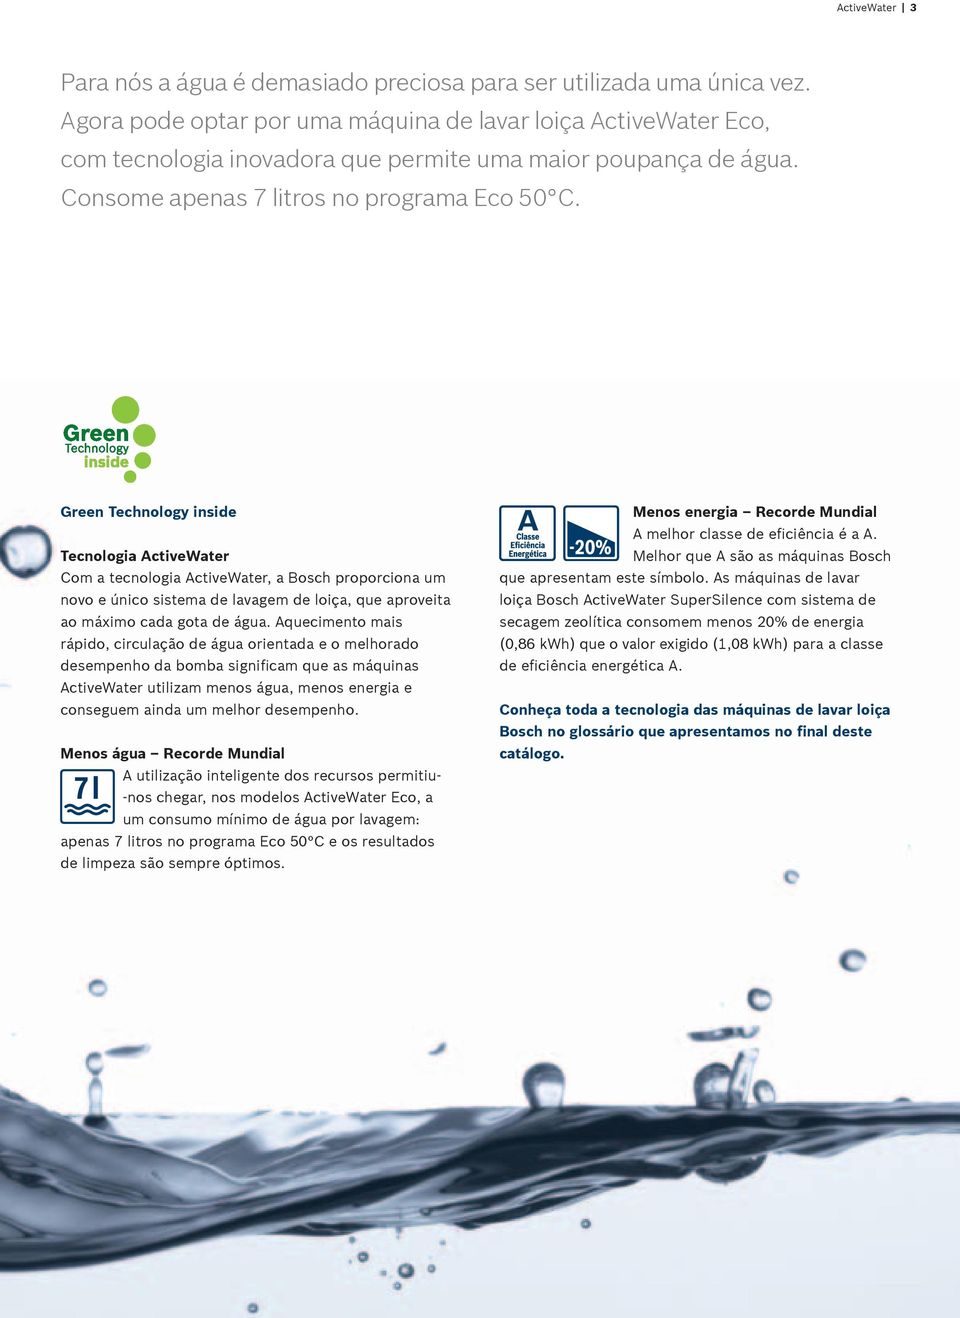 Green Technology inside Tecnologia ctivewater Com a tecnologia ctivewater, a Bosch proporciona um novo e único sistema de lavagem de loiça, que aproveita ao máximo cada gota de água.